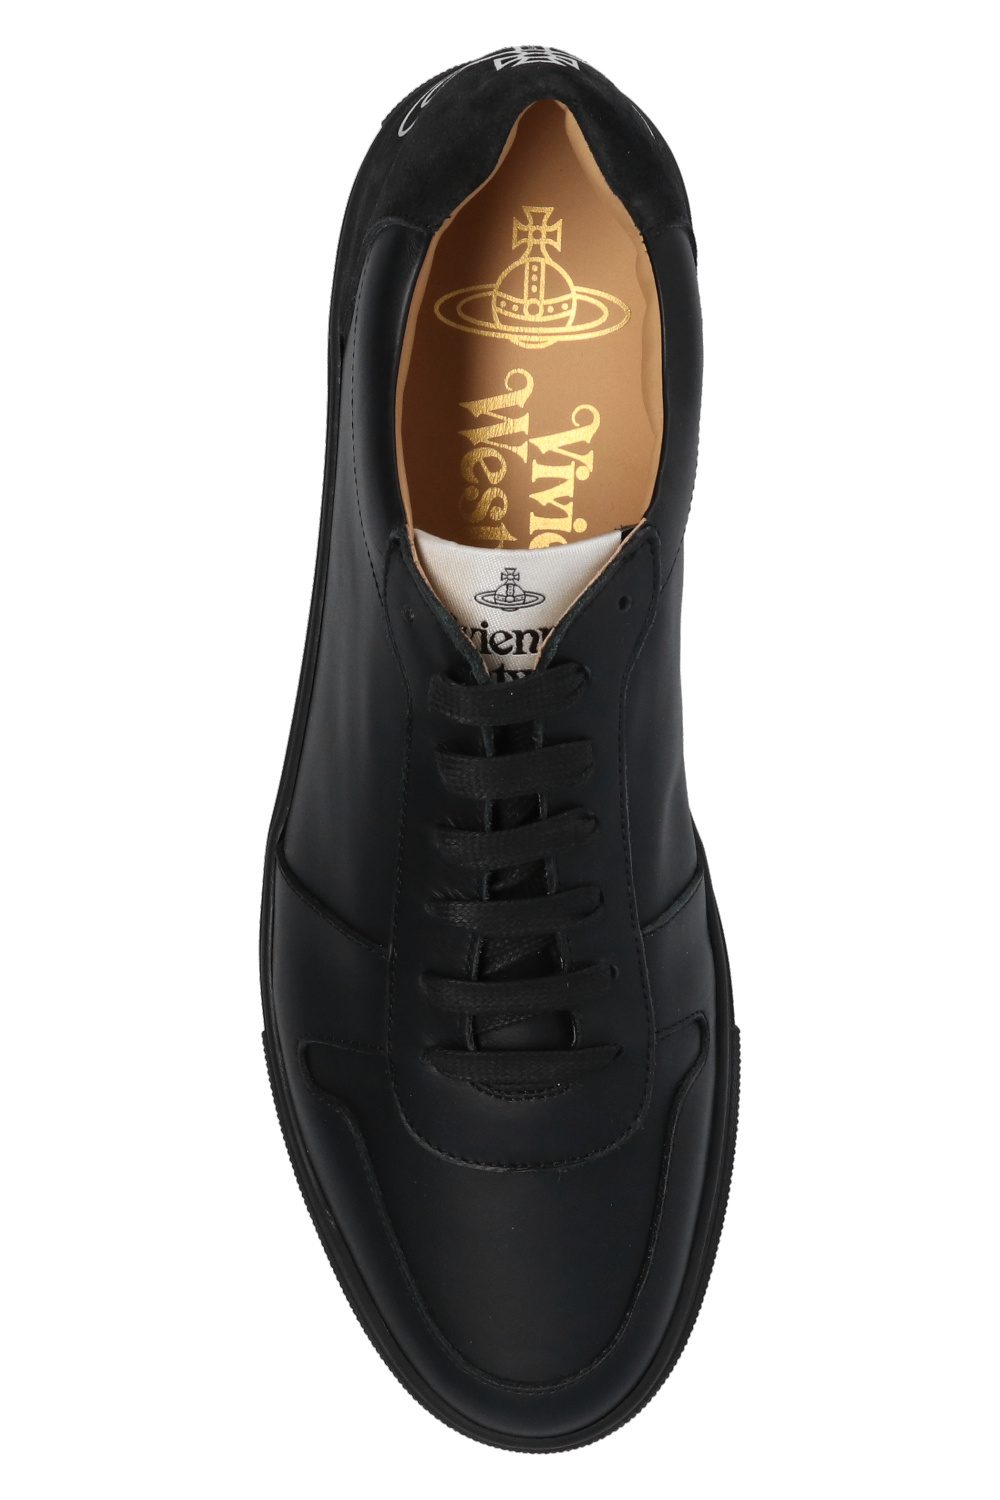 Louis Vuitton Sneakers  Zapatos, Zapatillas, Calzas